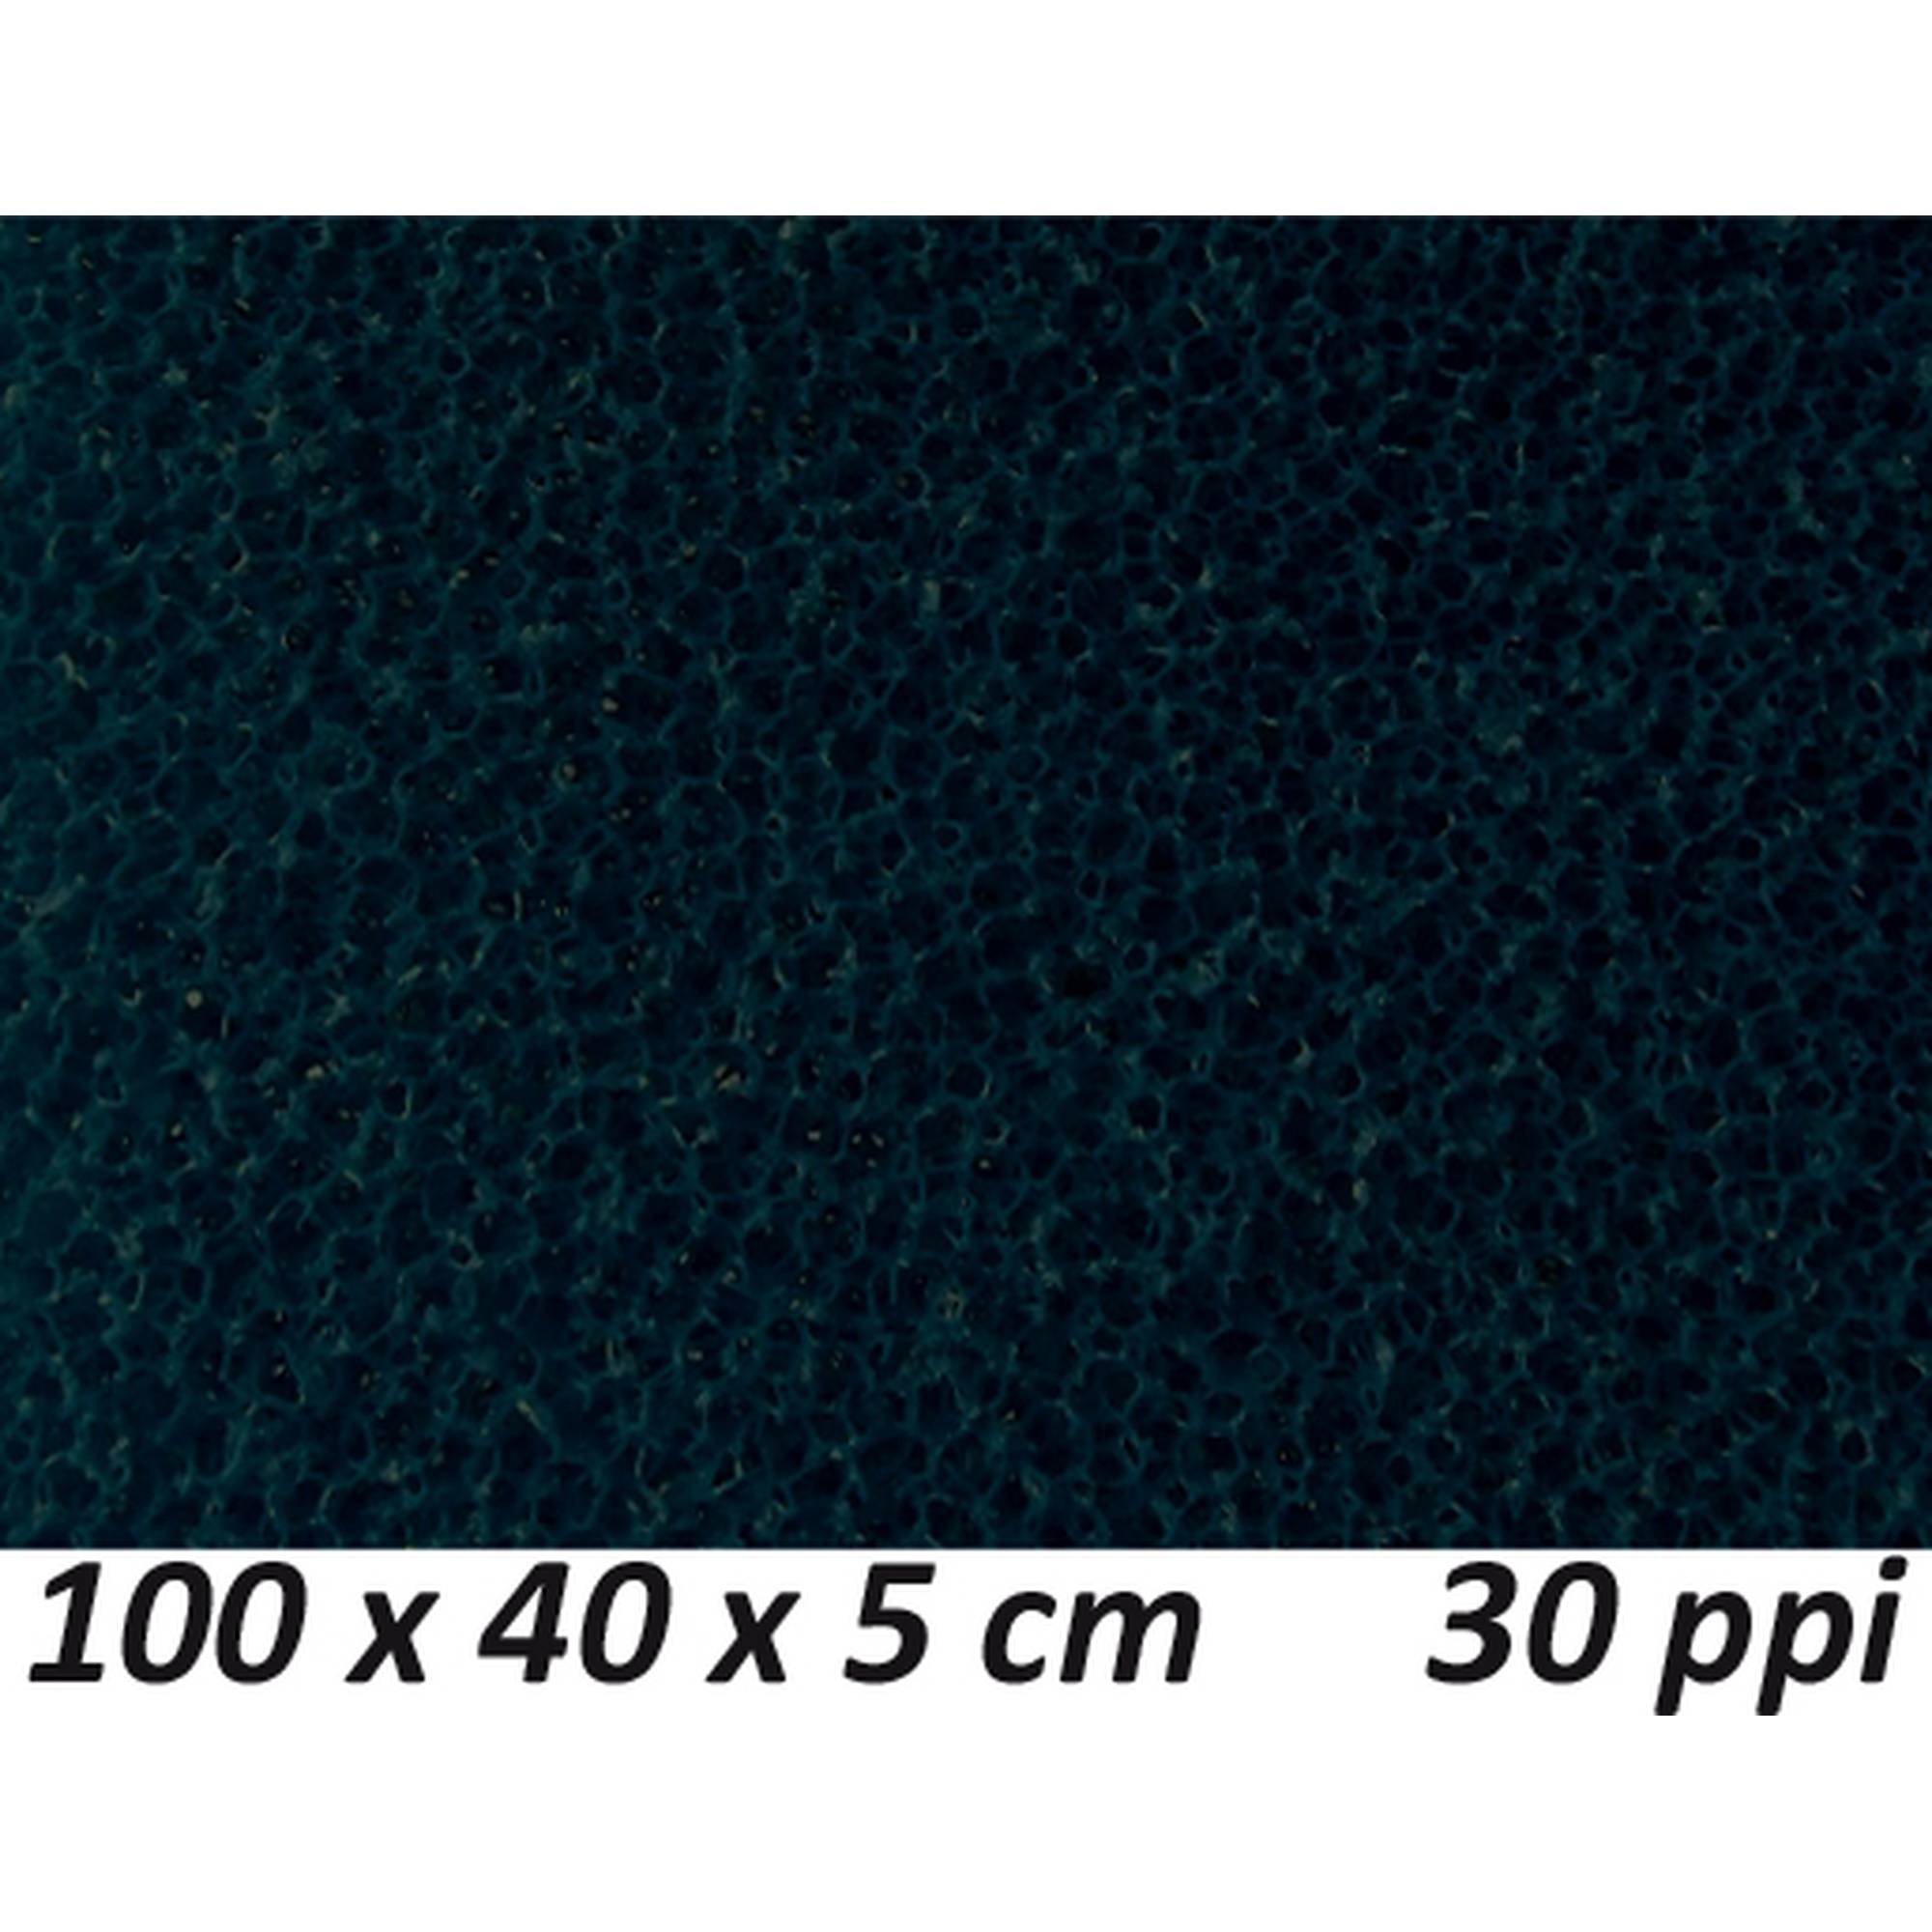 Filterschwamm Filtermaterial Filter fein 100 x 40 x 5 cm 30 ppi